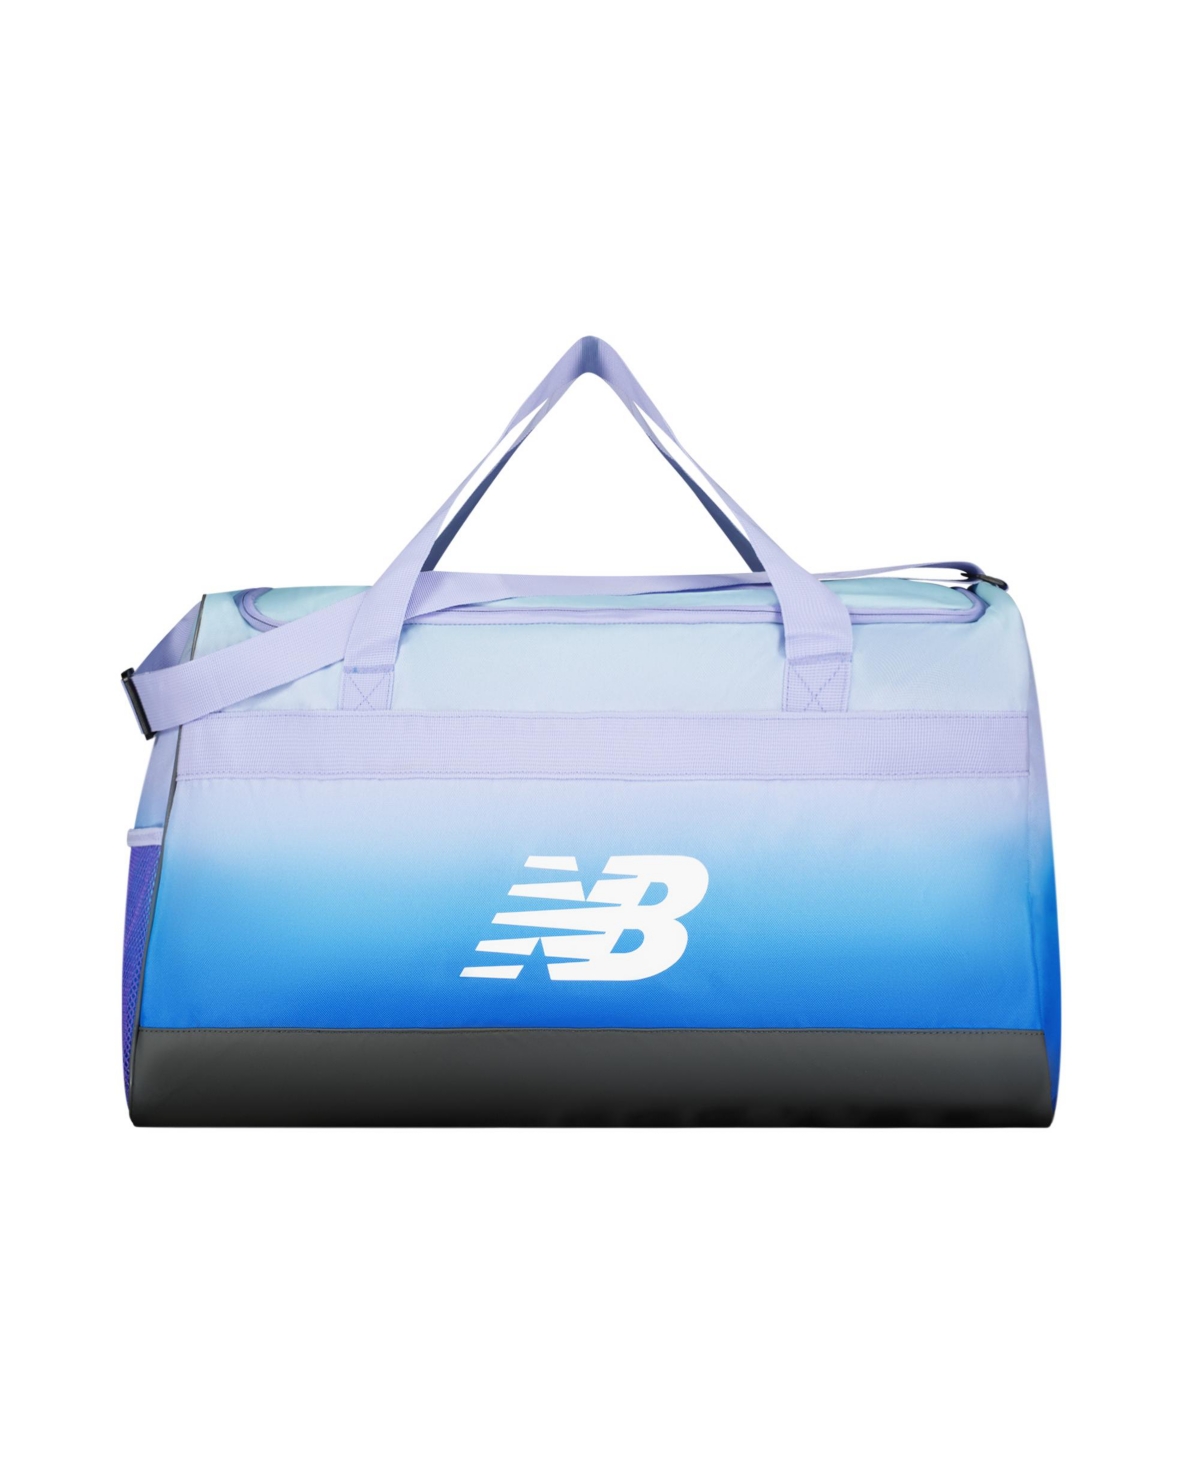 Team Duffel Bag Medium - Grey/blue